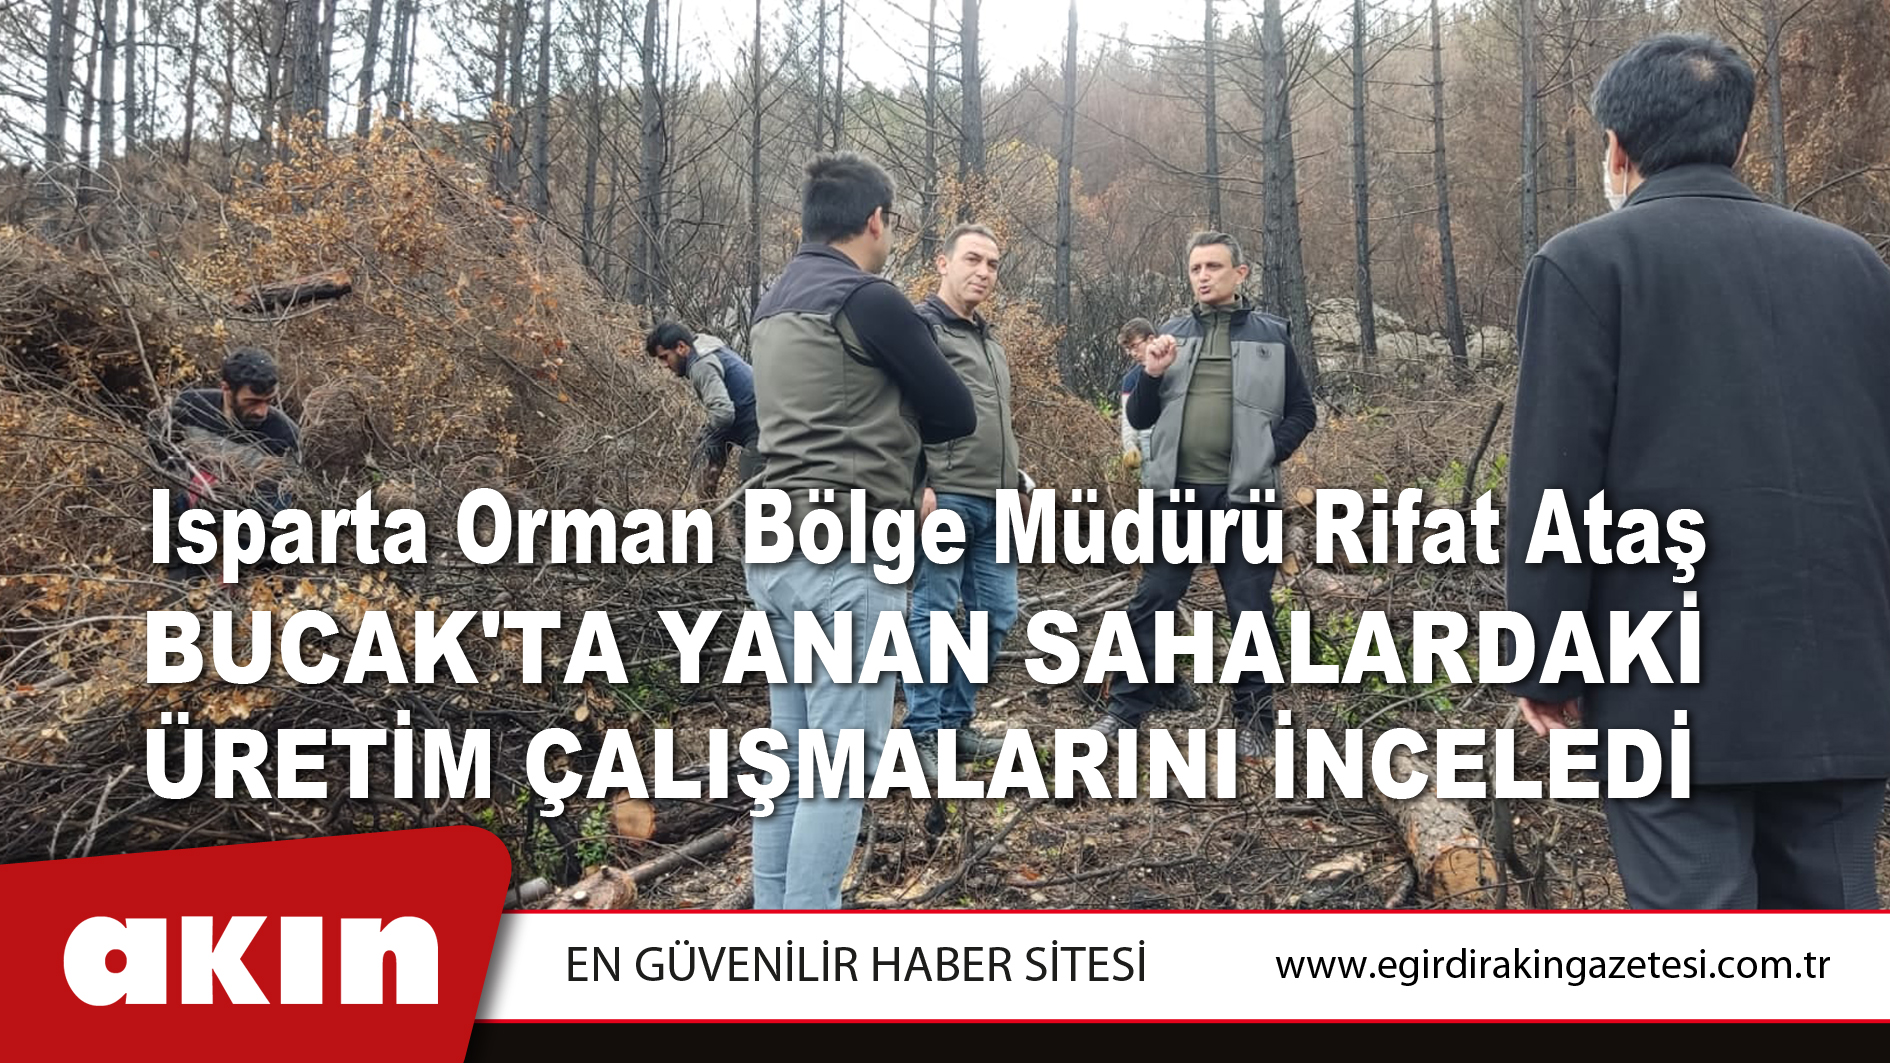 Isparta Orman Bölge Müdürü Rifat Ataş Yanan Sahalardaki Üretim Çalışmalarını İnceledi